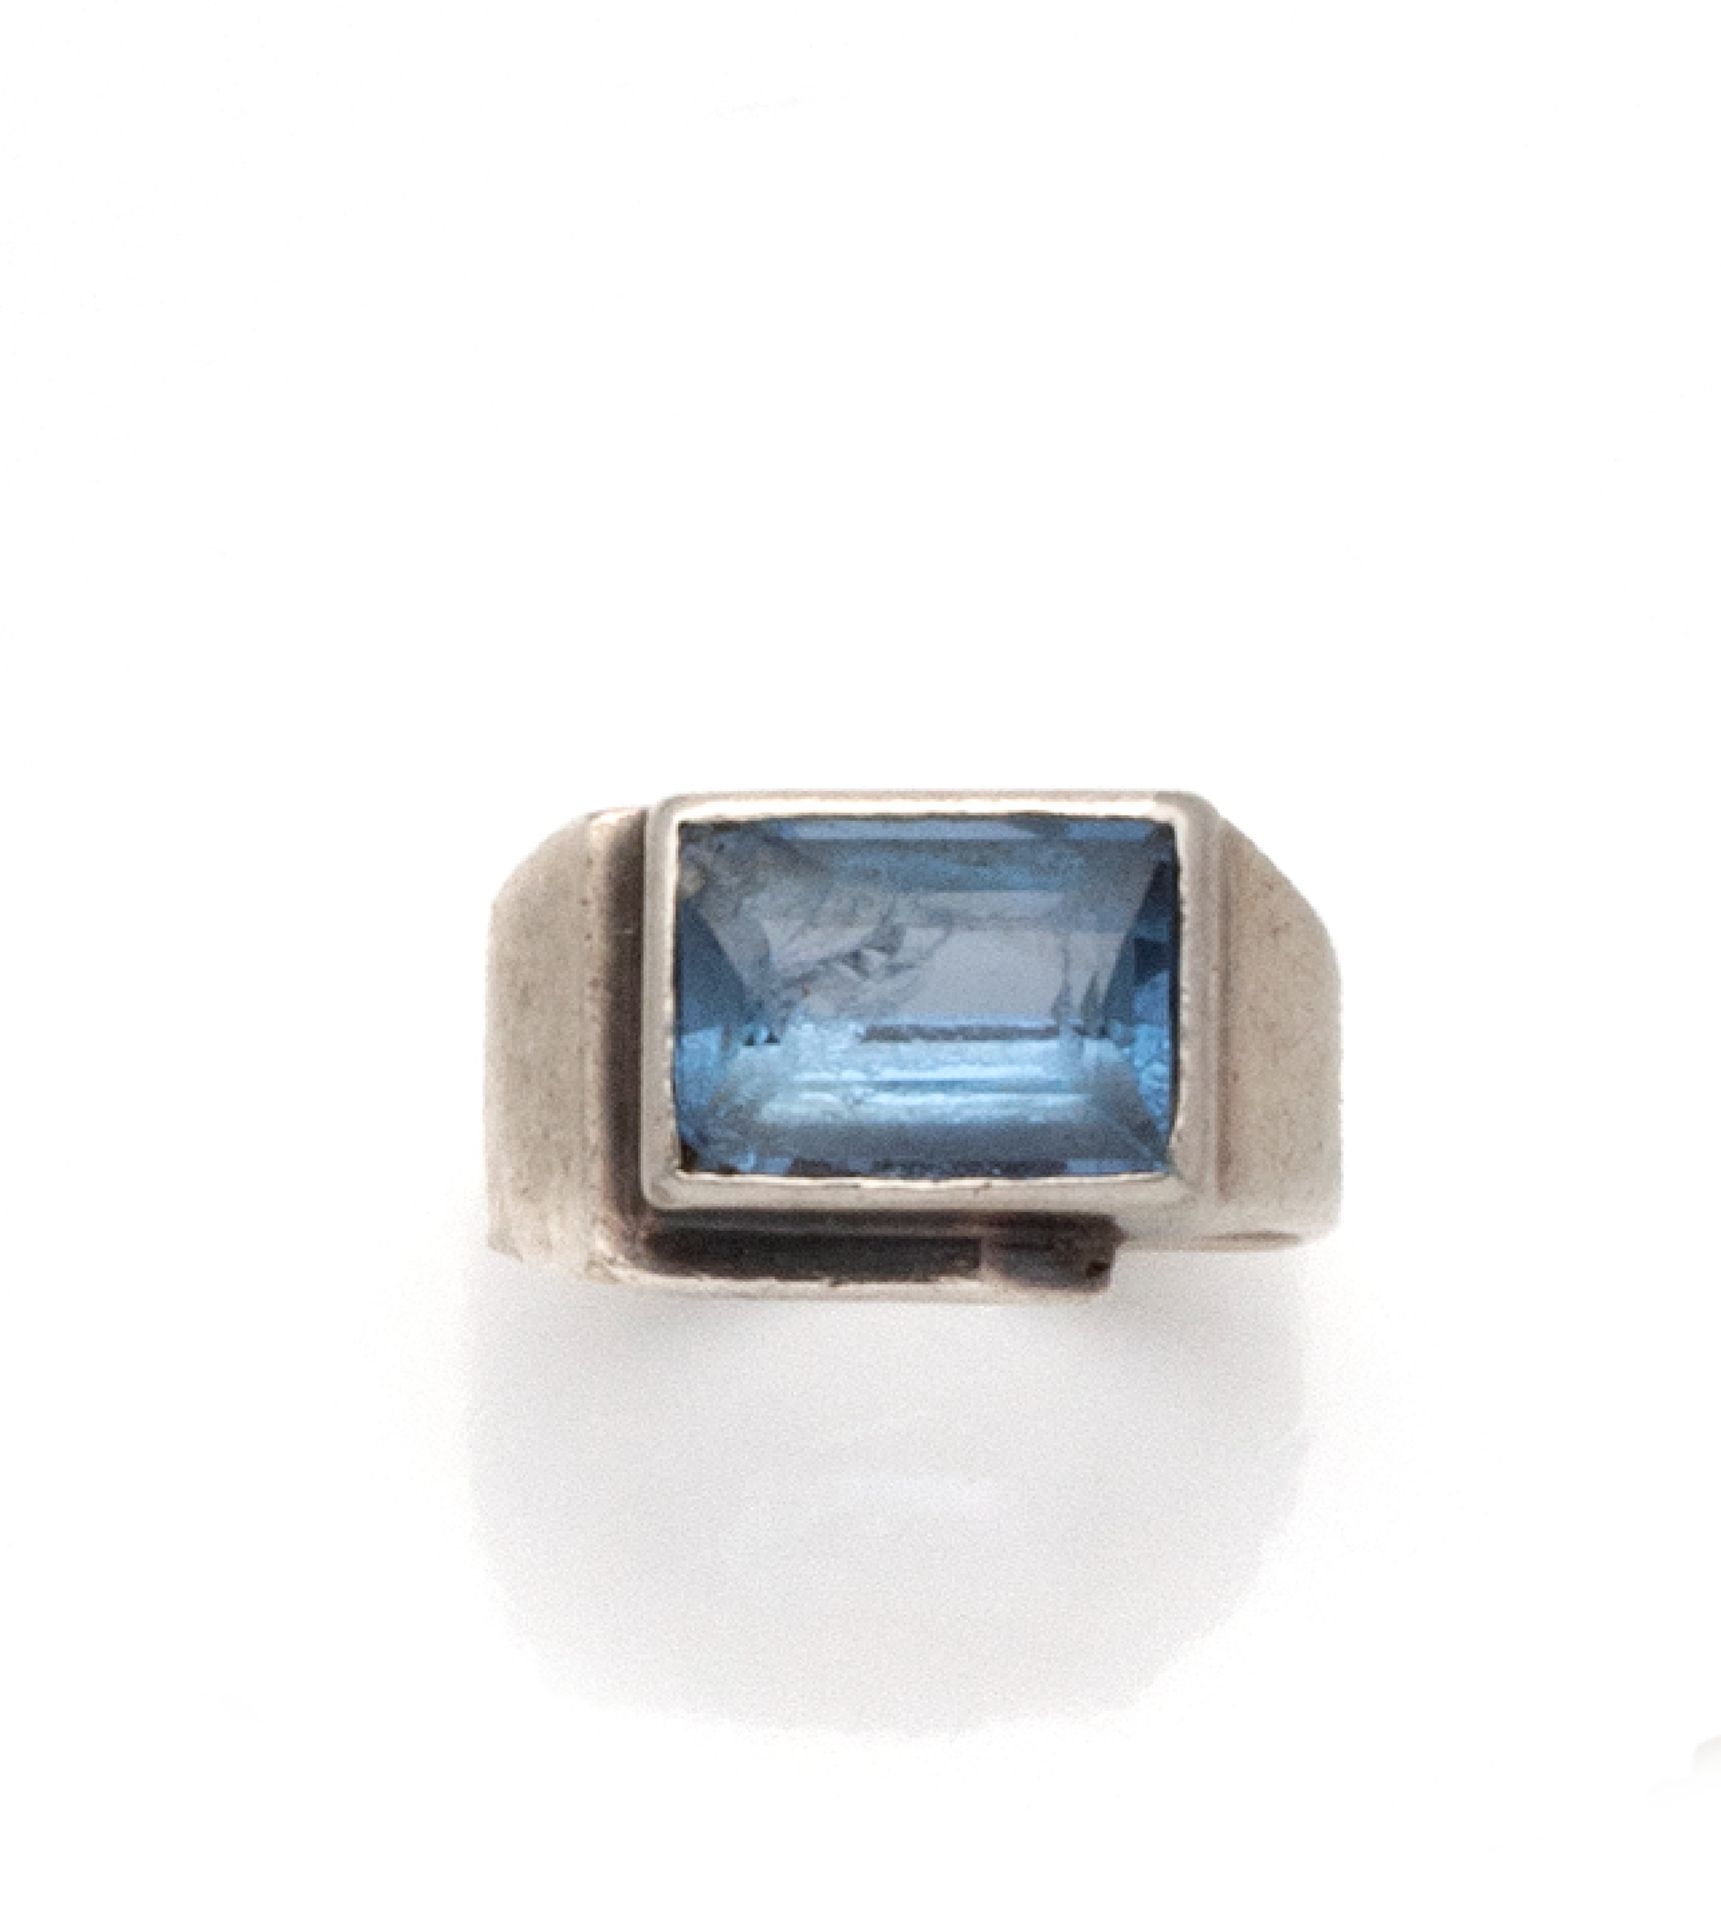 Null 装饰艺术银戒指（800/1000），以封闭式镶嵌的长方形蓝宝石为中心。

手指大小：58.5 - 总重量：4.4克

(石头上的碎片)